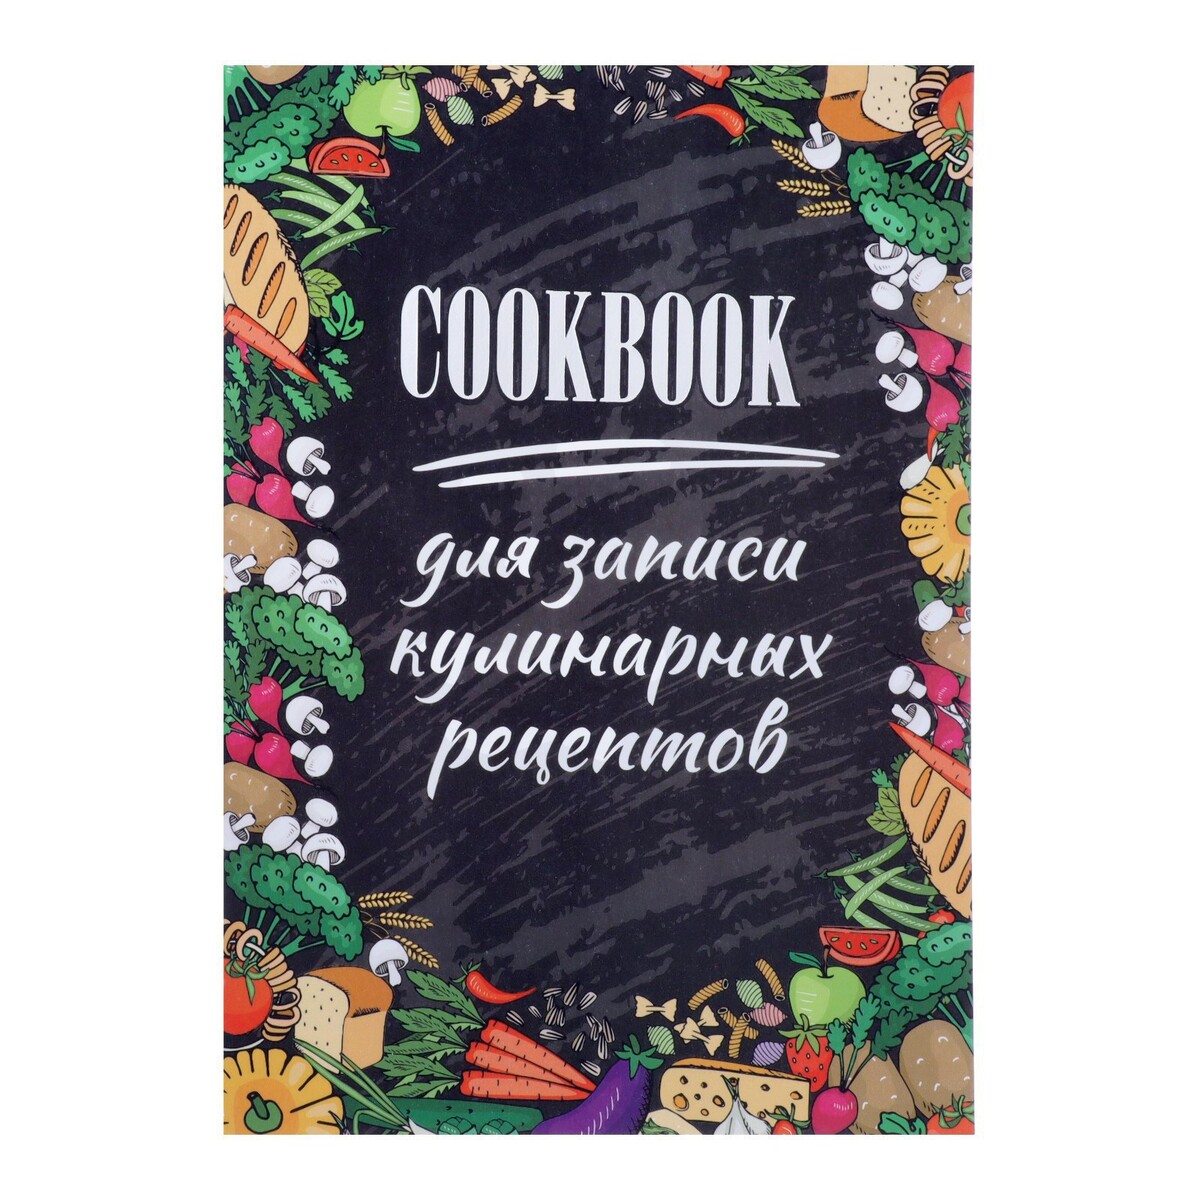 Книга для записи кулинарных рецептов а5, 48 листов неофициальная книга для записи рецептов гарри поттера